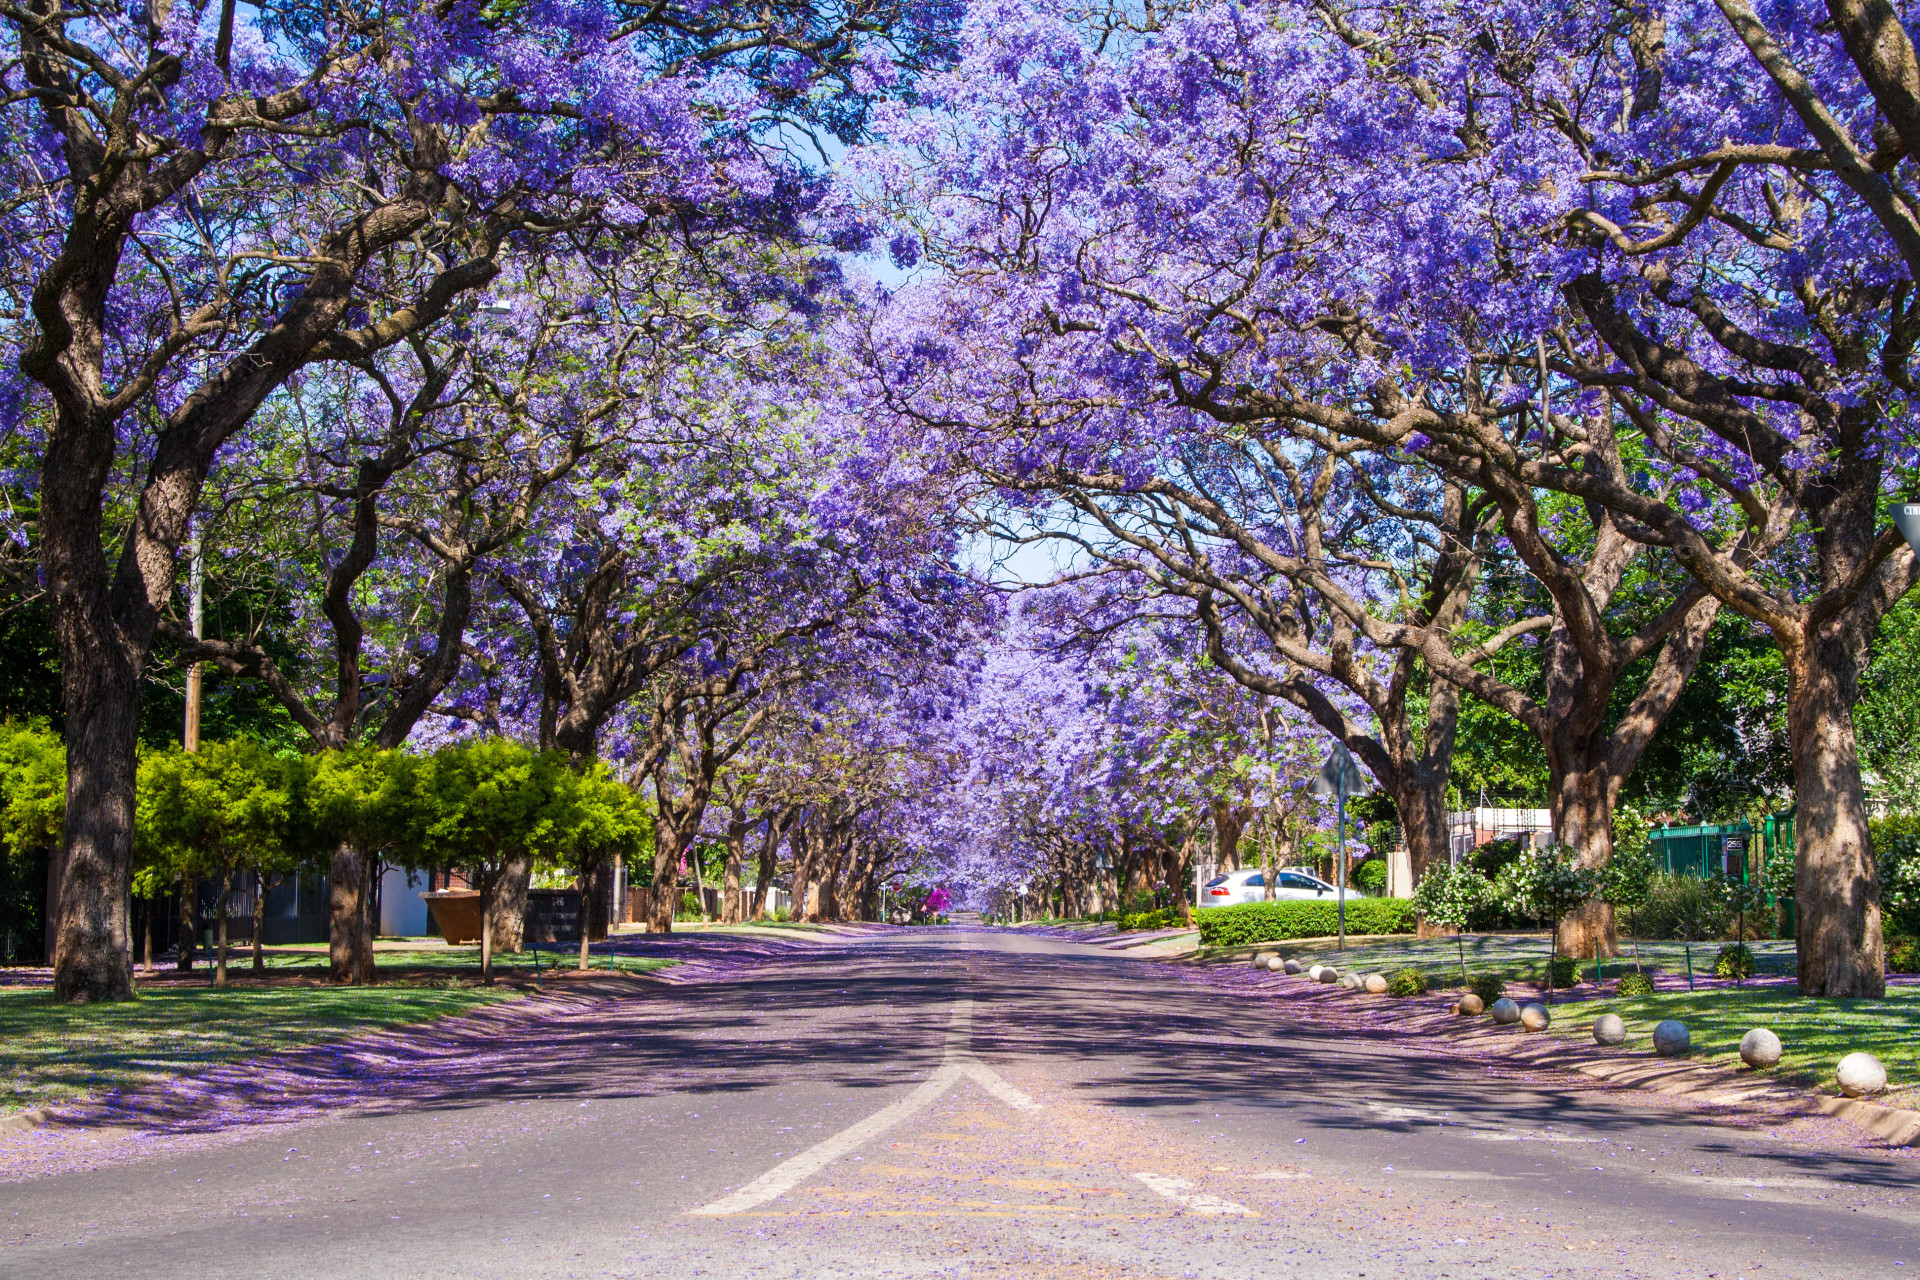 Pas de pluie pourpre ici, mais des arbres pourpres! Les majestueux arbres Jacaranda d'Afrique du Sud fleurissent de fin septembre à novembre et sont principalement observés à Pretoria et Johannesburg. Selon de nombreuses personnes, les fleurs ont un pouvoir magique: certains étudiants en Afrique du Sud pensent que si une fleur de Jacaranda vous tombe sur la tête pendant les examens, vous les réussirez!<p>Tu pourrais aussi aimer:<a href="https://www.starsinsider.com/n/248749?utm_source=msn.com&utm_medium=display&utm_campaign=referral_description&utm_content=314472v3"> Hollywood: combien coûtent les autographes des stars? </a></p>